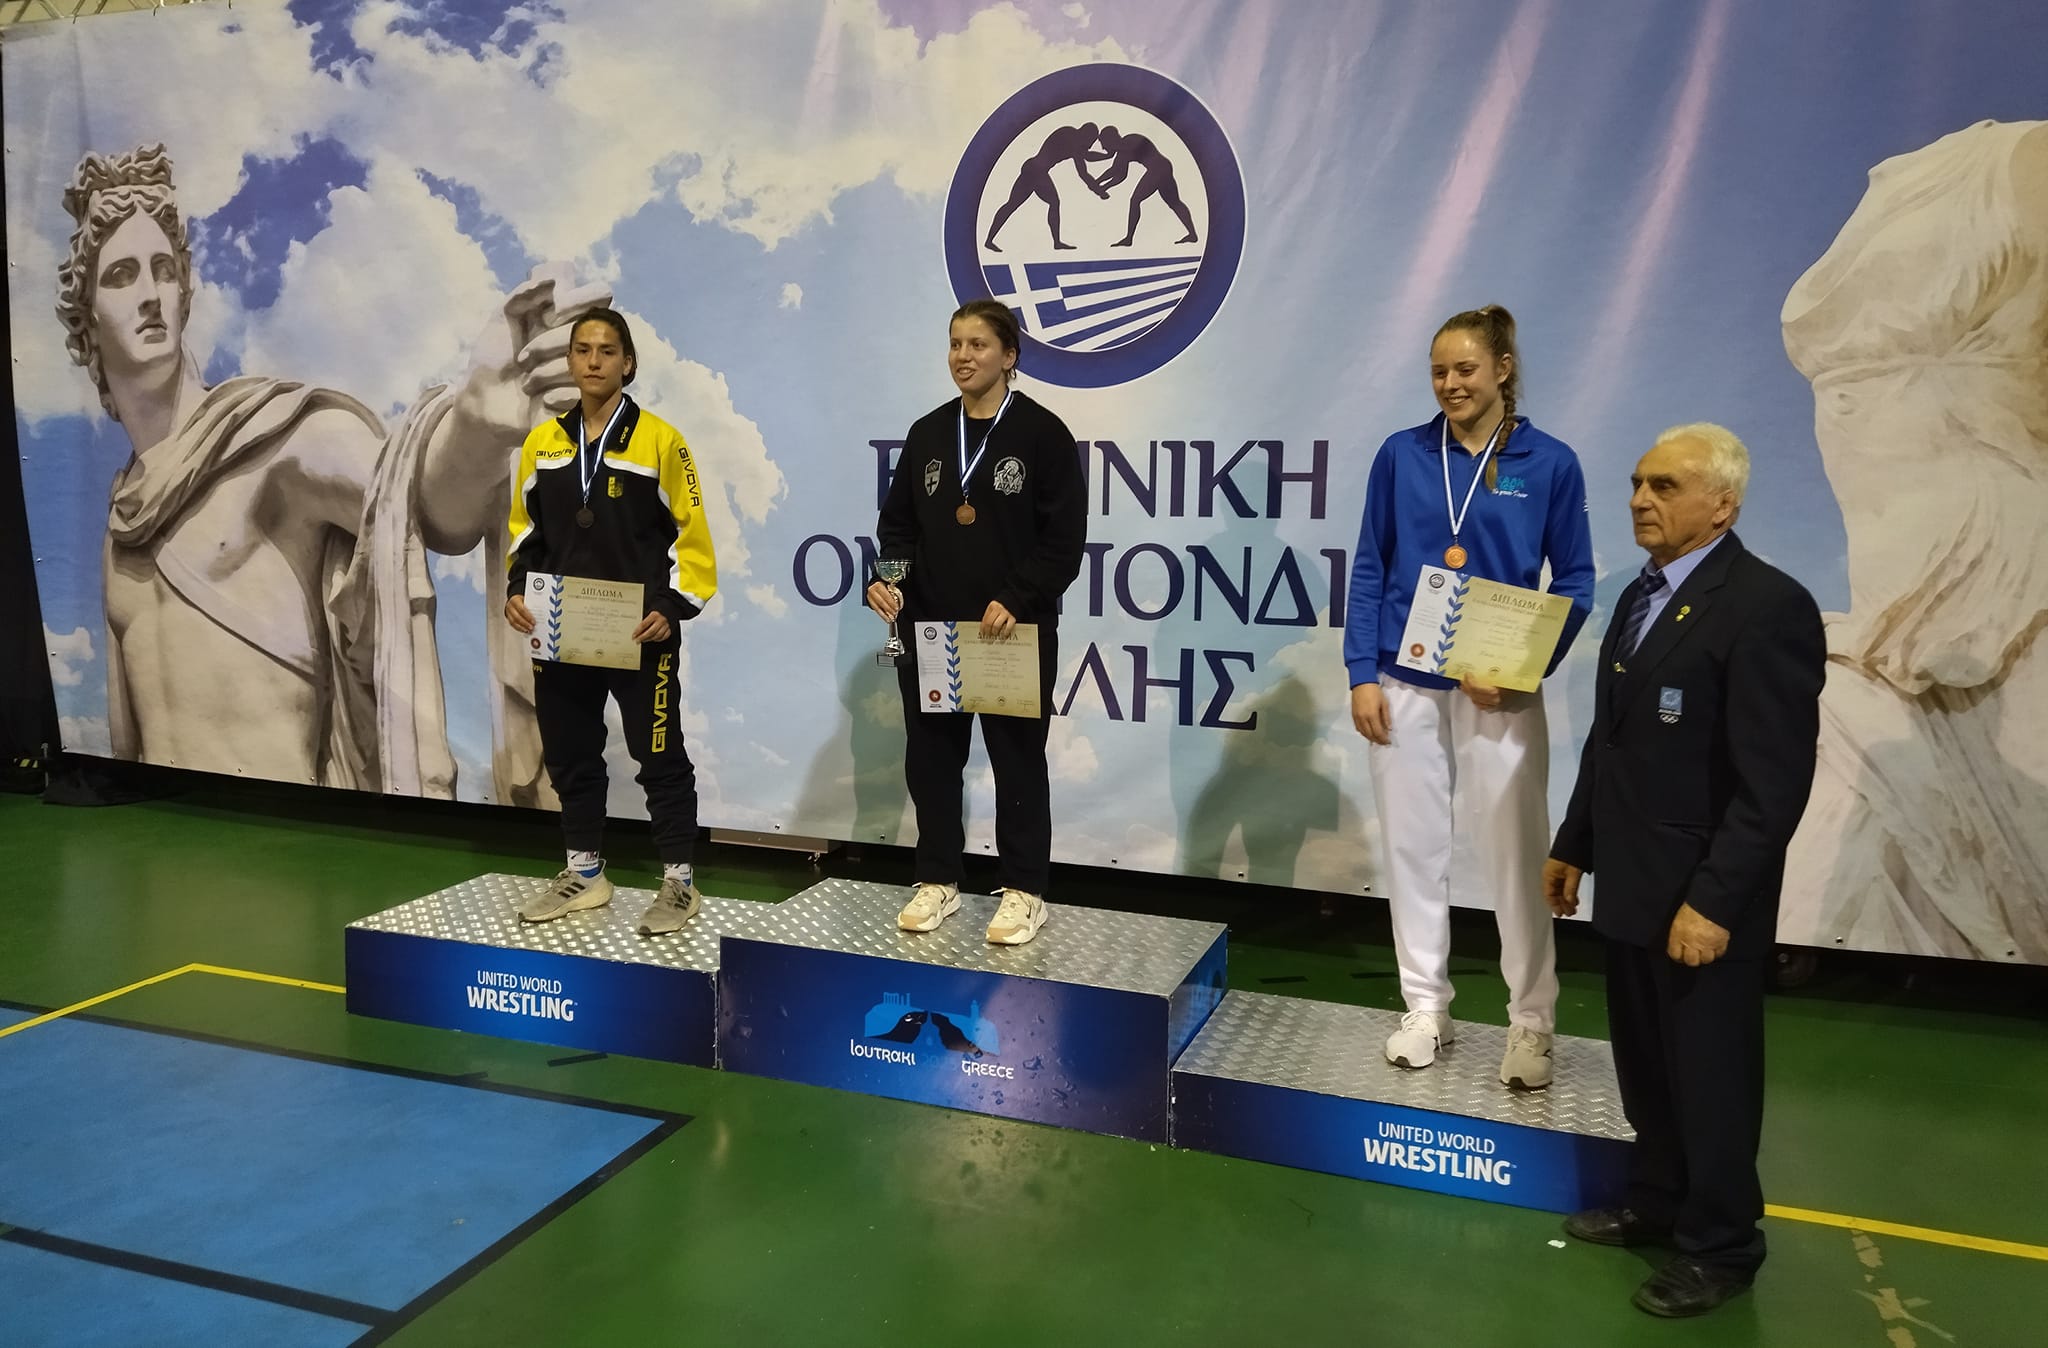 Πάλη: Αργυρό μετάλλιο για τη Λυγερή Βούλγαρη στο πανελλήνιο πρωτάθλημα Ελευθέρας Πάλης (pics)